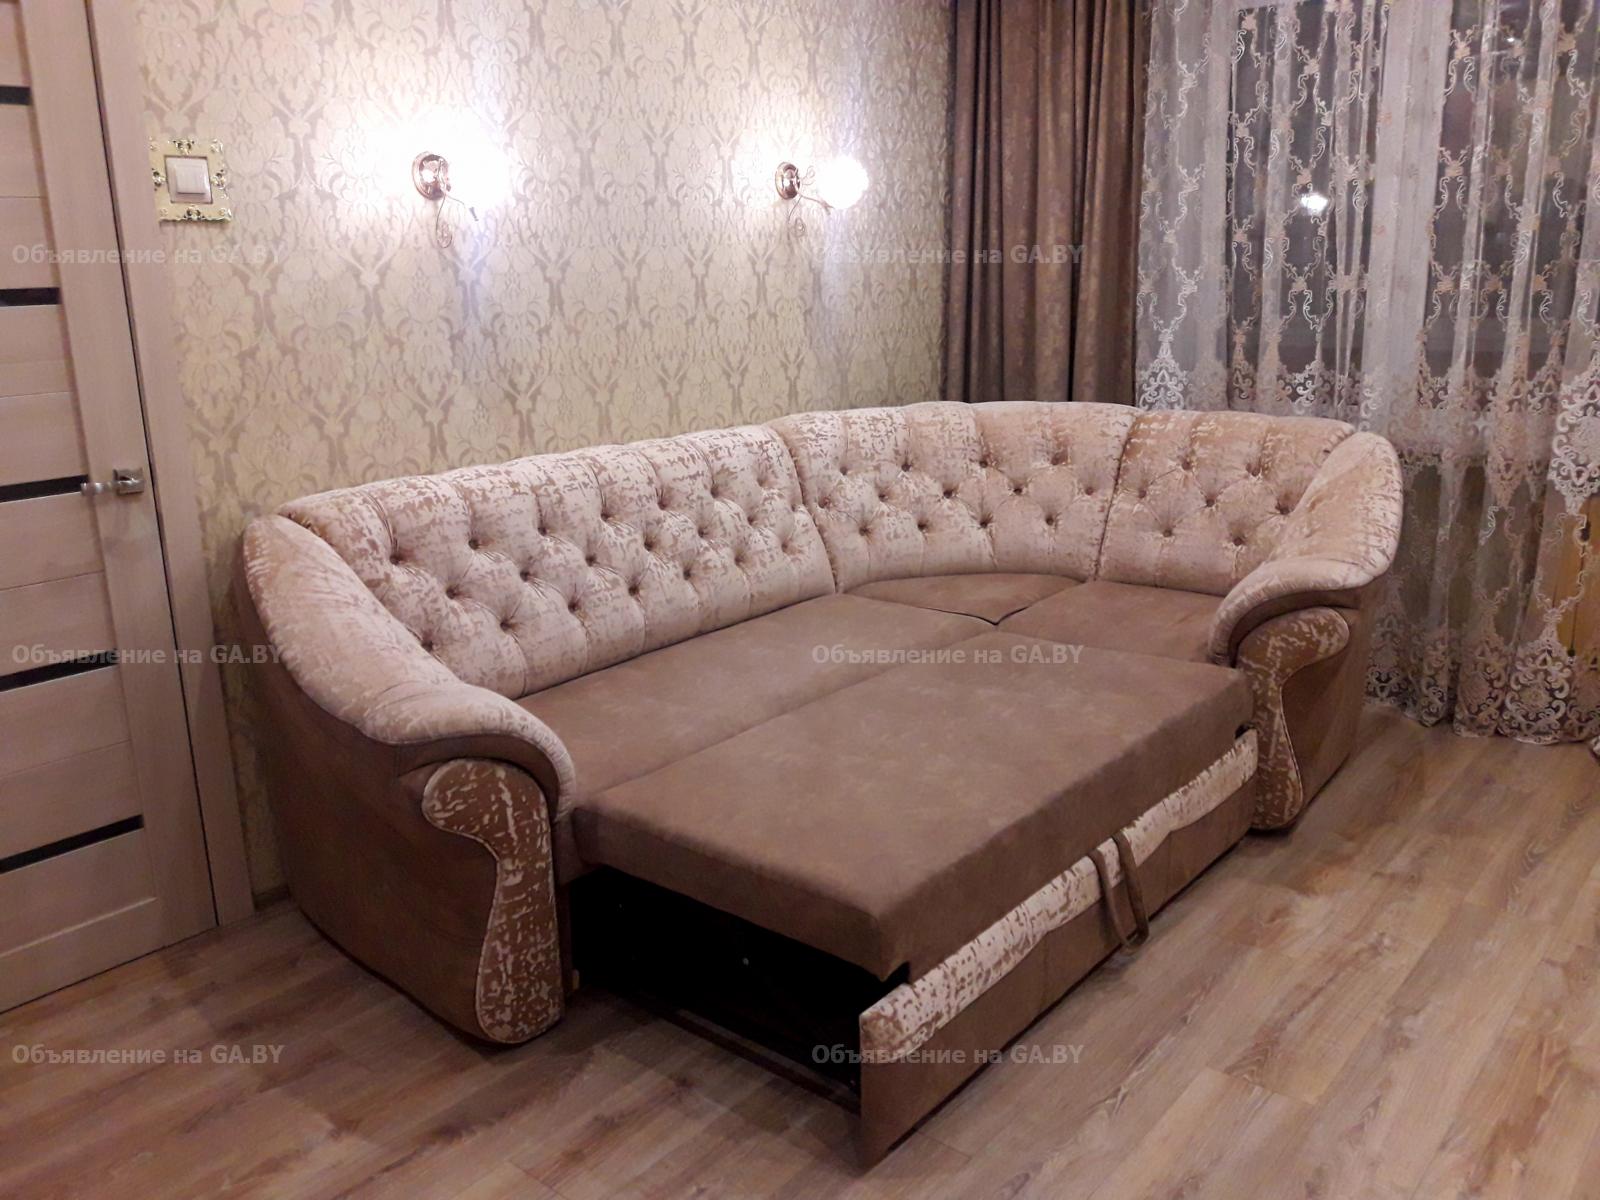 Продам Продам угловой диван - GA.BY